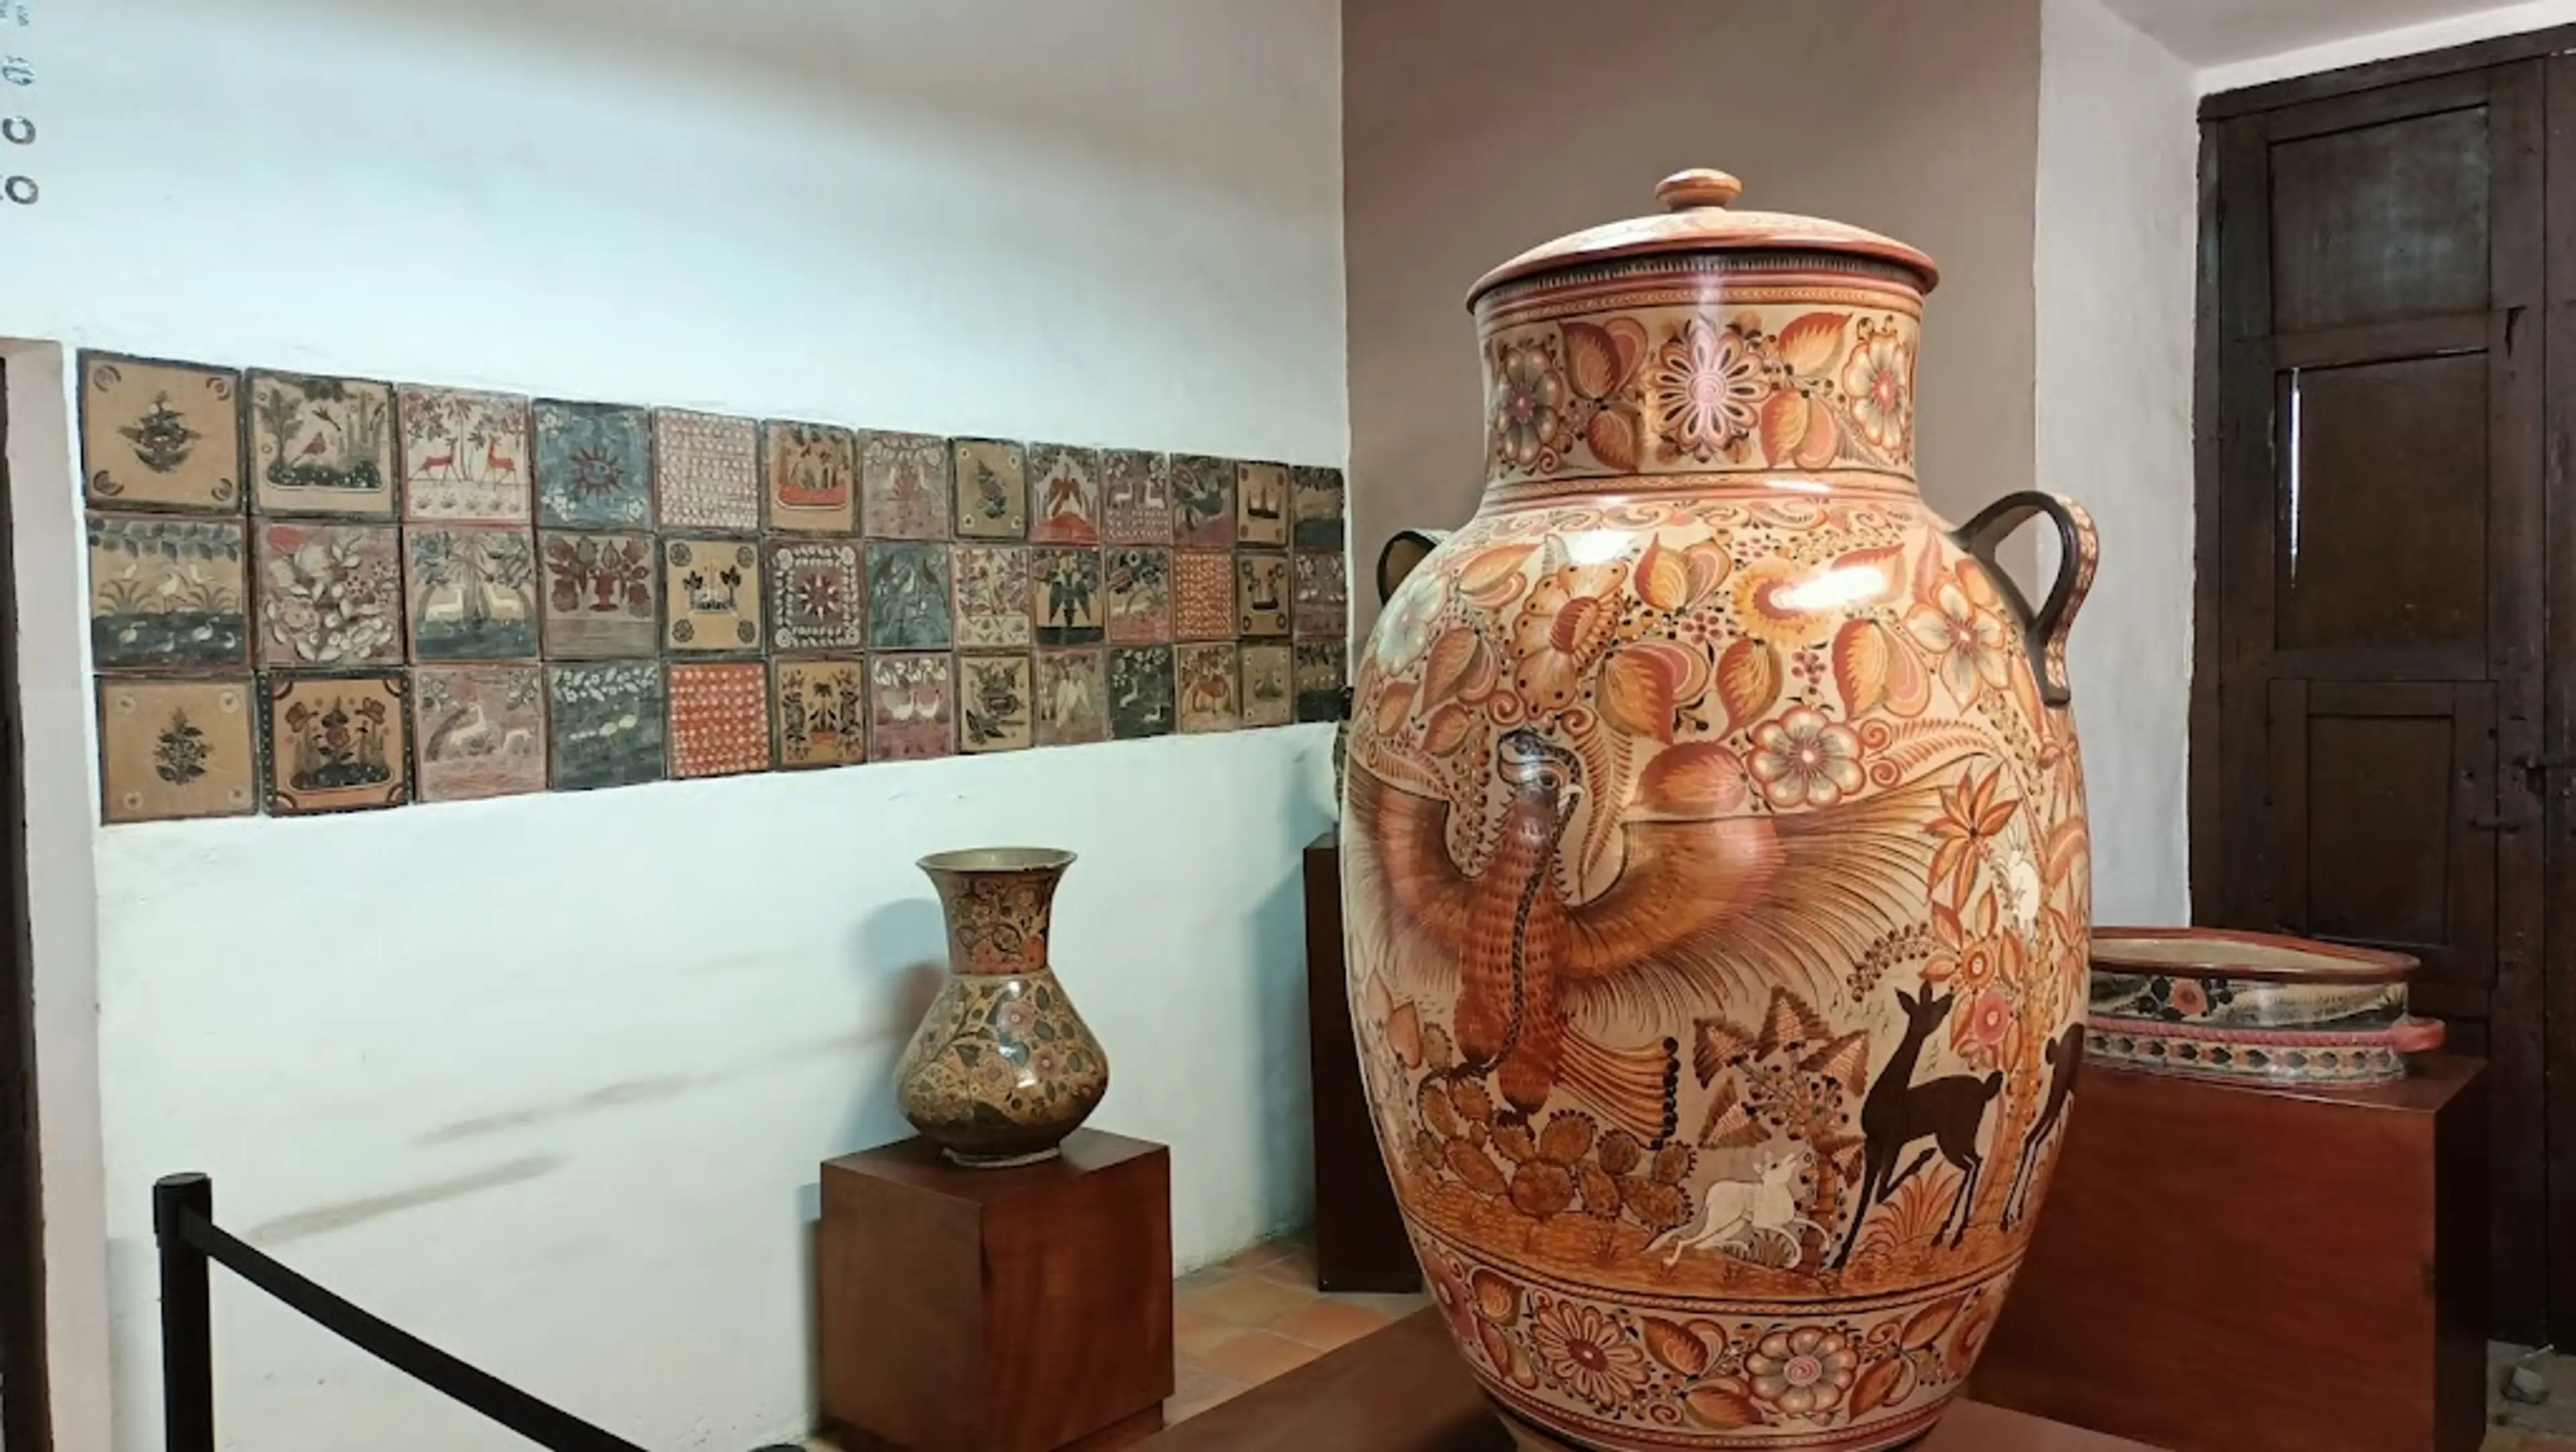 Regional Ceramic Museum